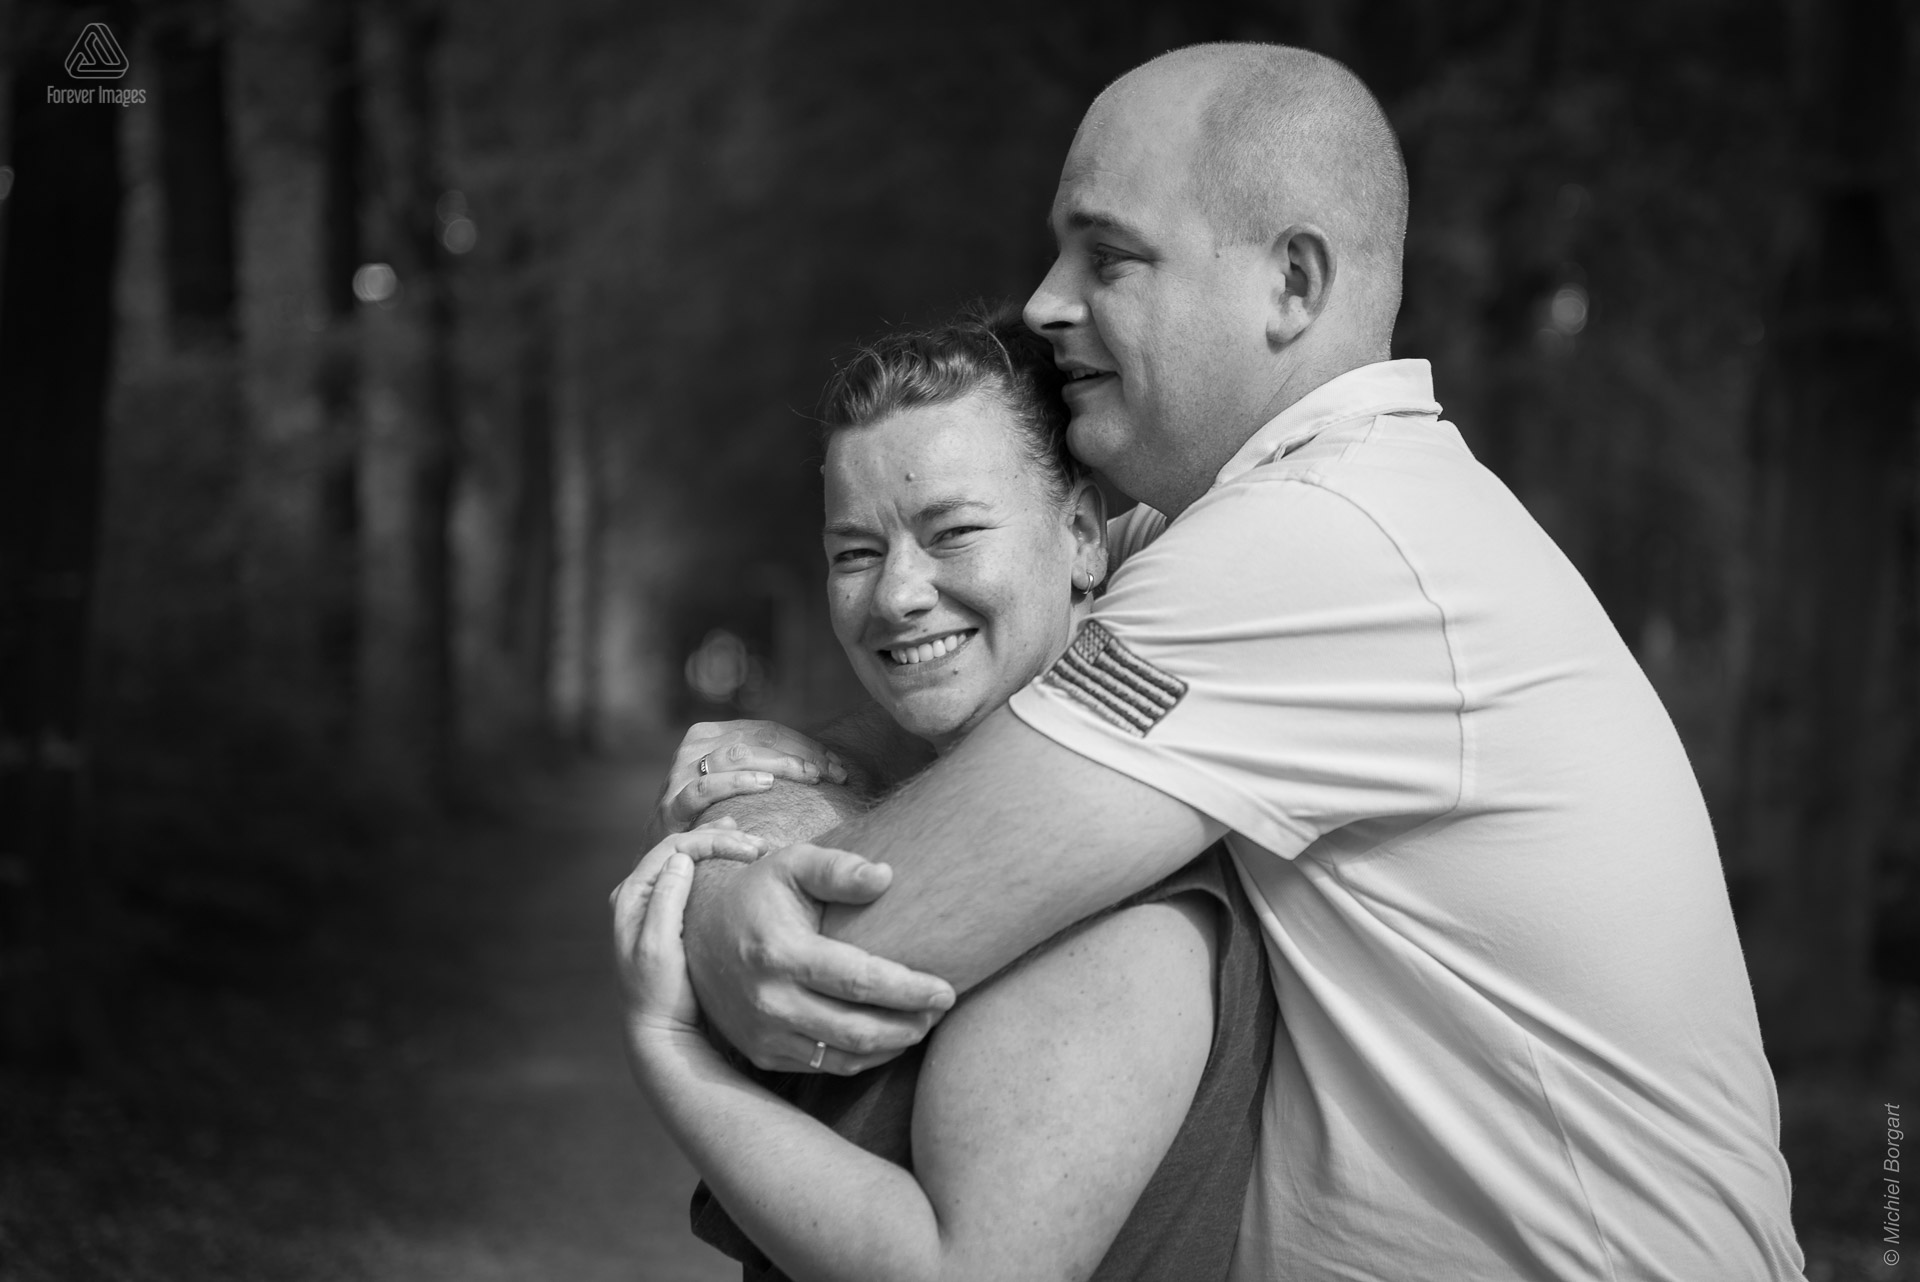 Loveshoot in zwart-wit jong echtpaar in bos | Portretfotograaf Michiel Borgart - Forever Images.